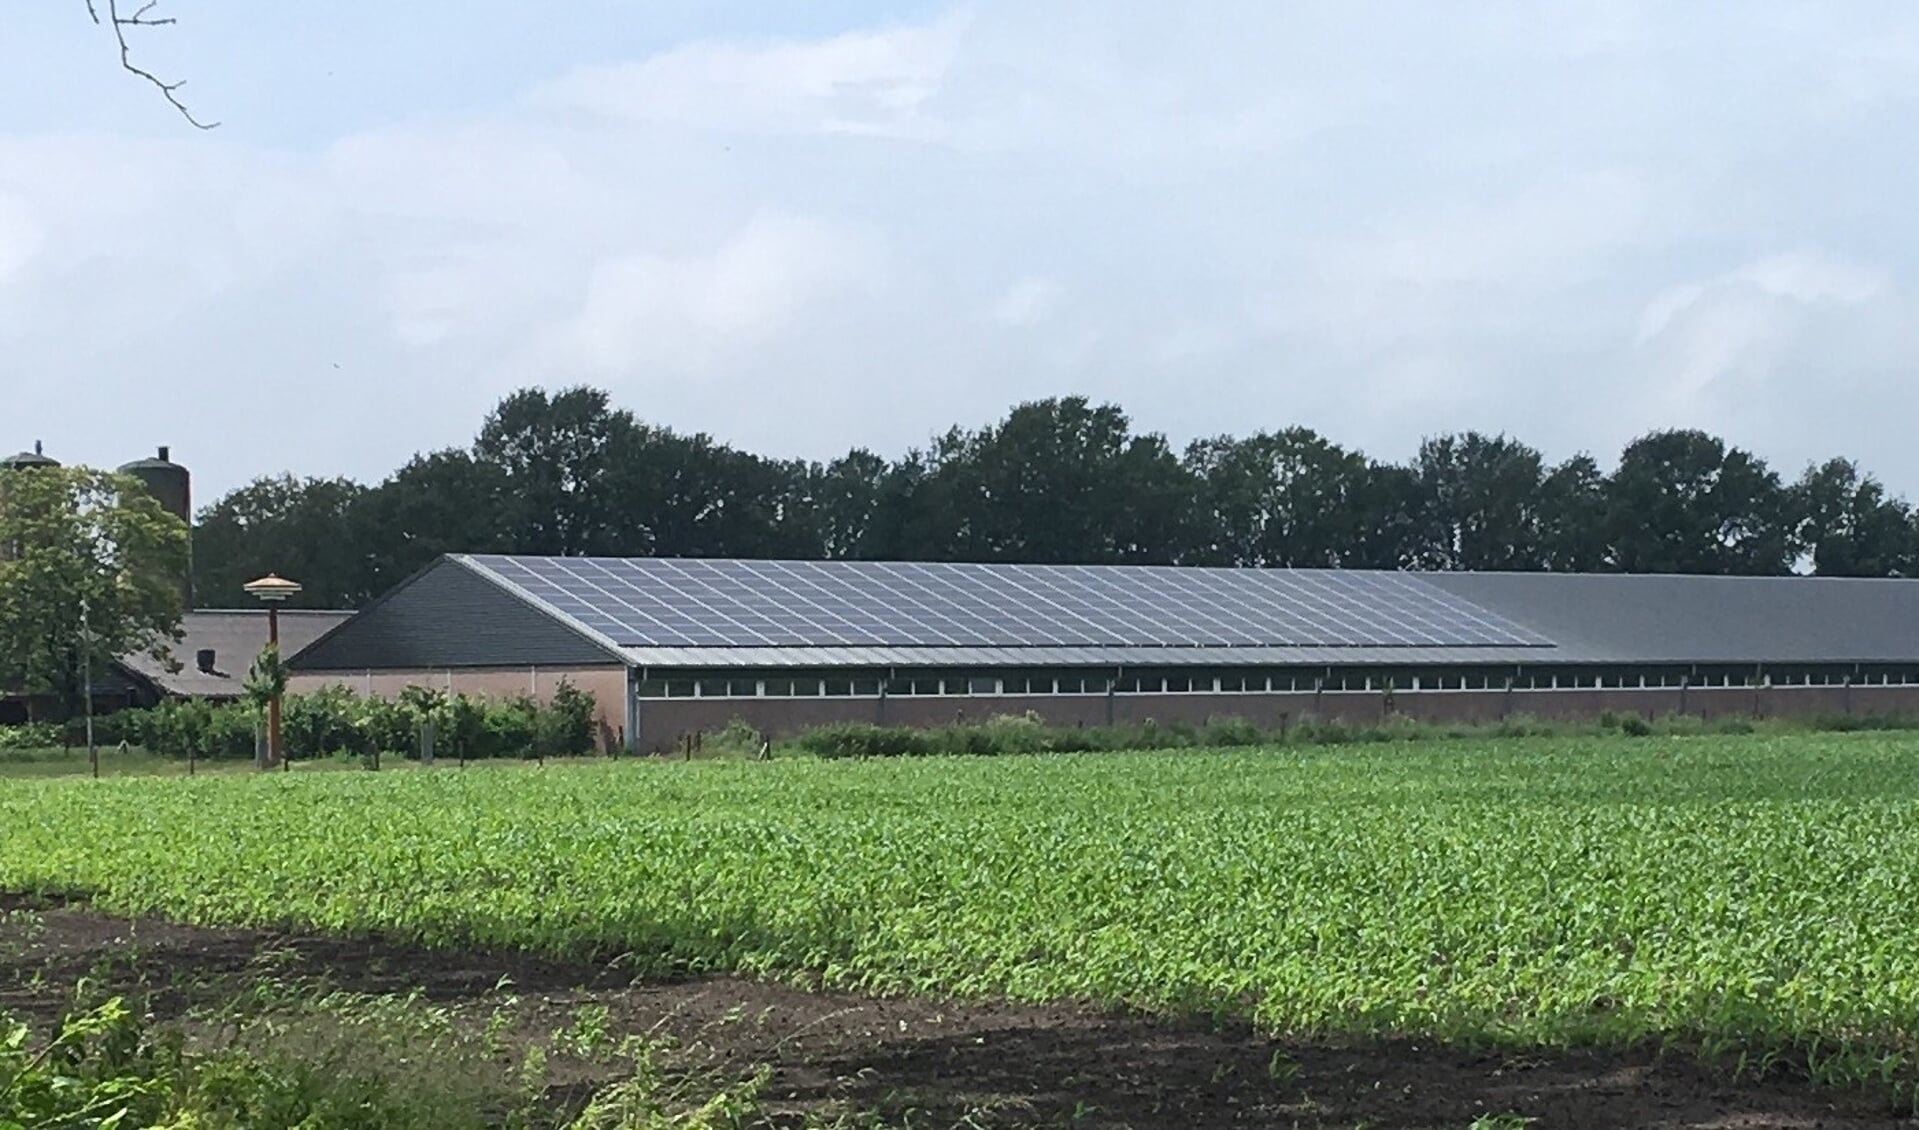 Op het dak van dit varkensbedrijf komen vele honderden zonnepanelen te liggen.